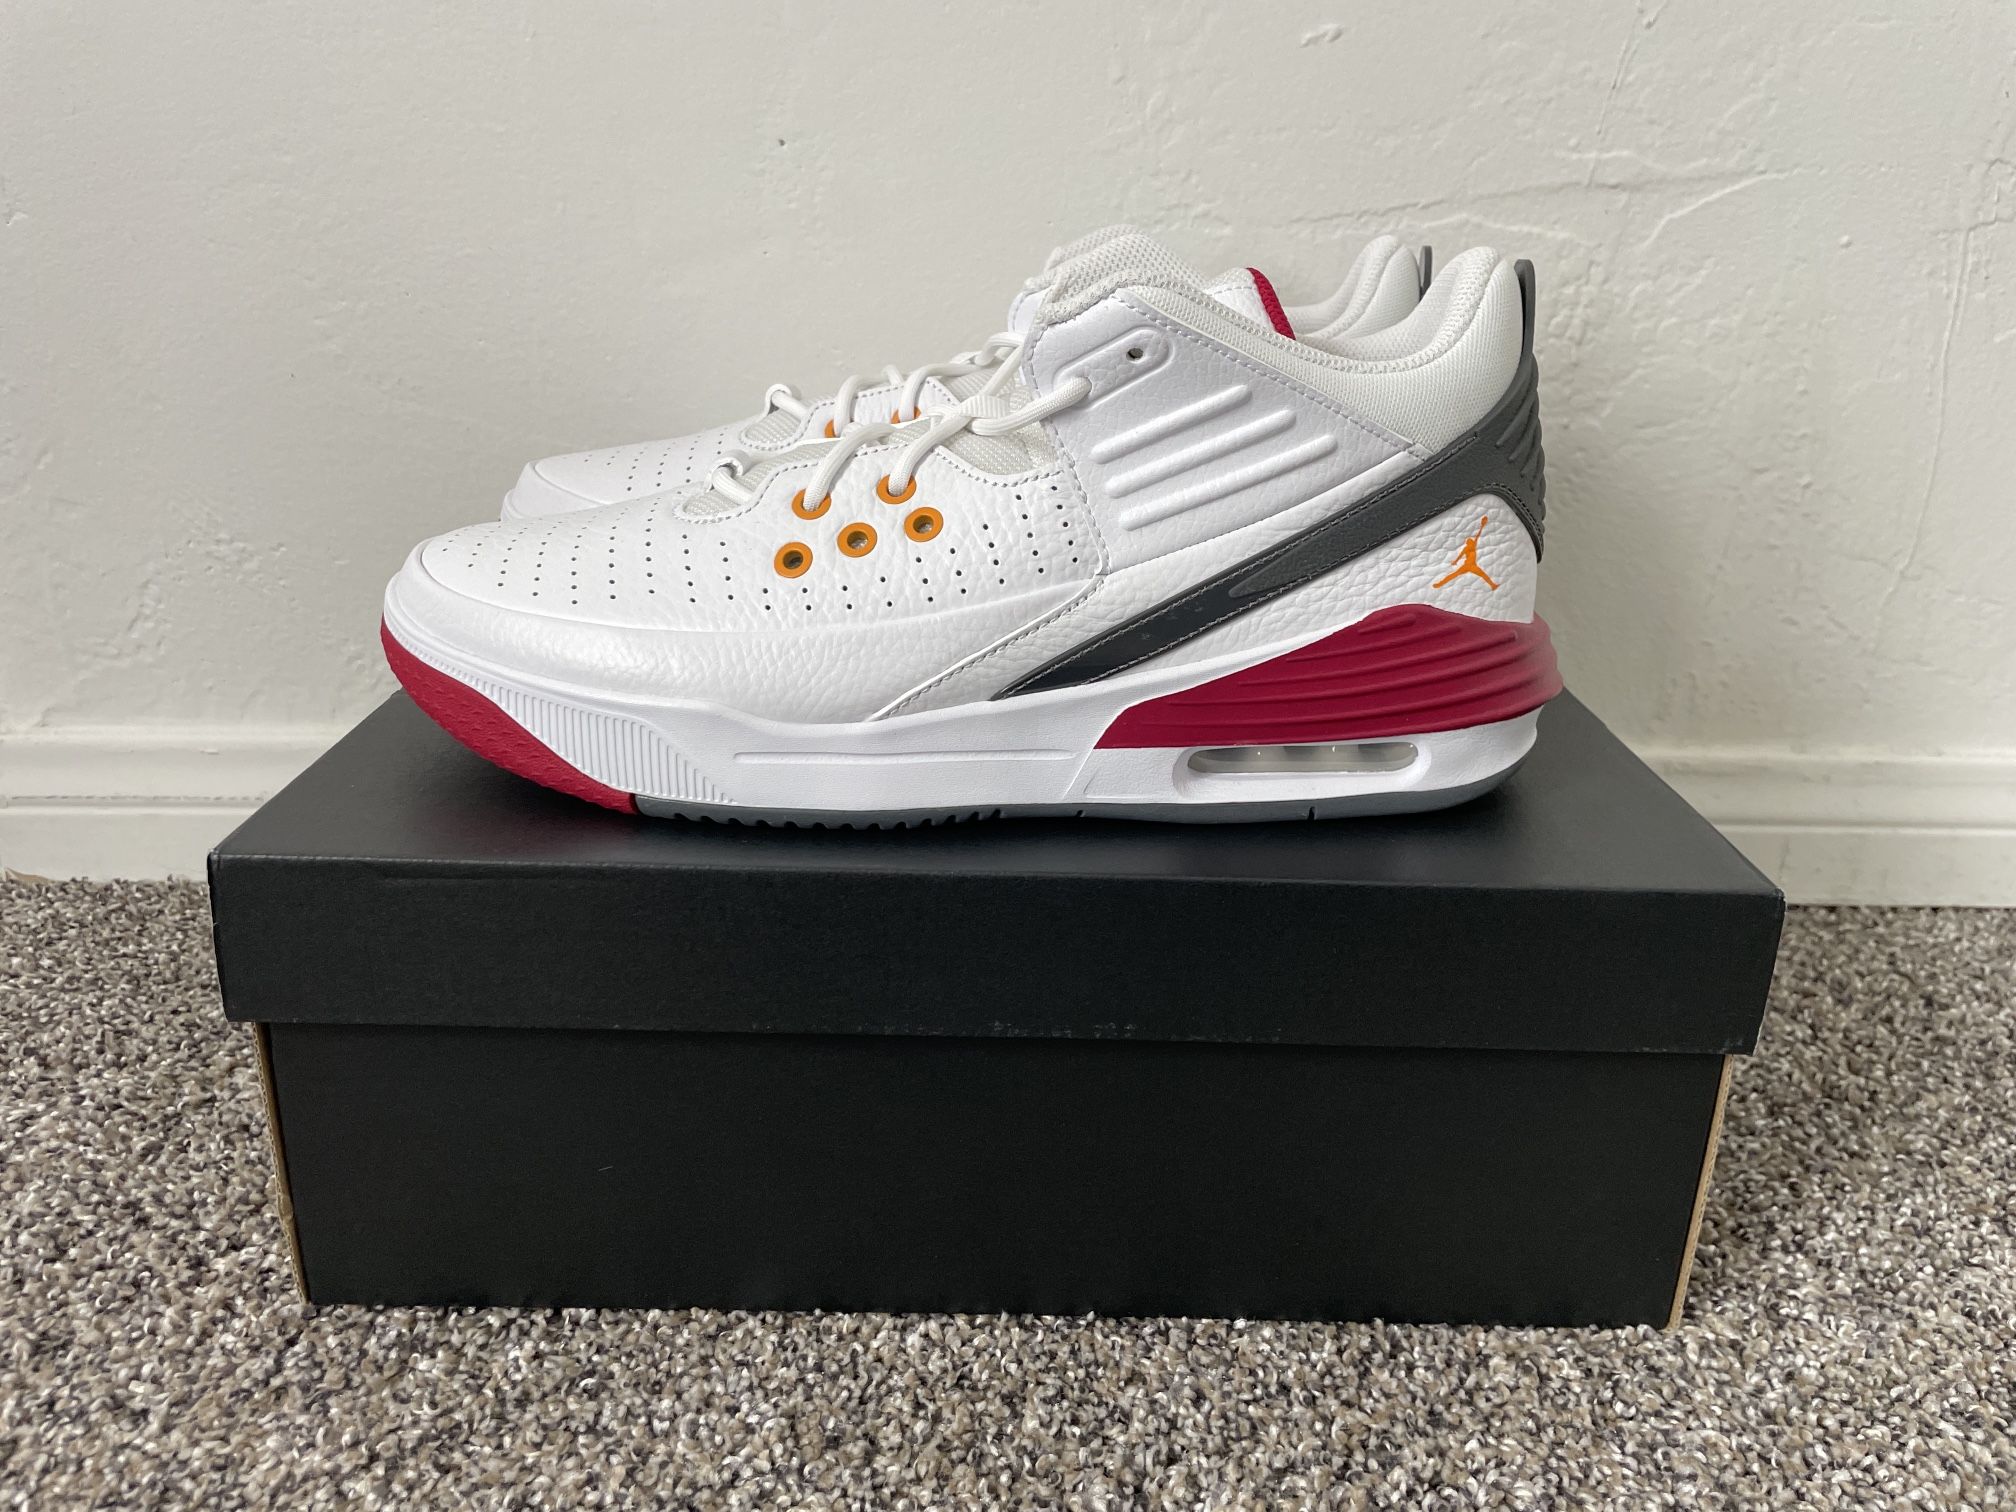 New Nike Jordan Aura Max 5 Men’s Shoe White/Cardinal Red/Vivid Orange Size 9.5, 10, 10.5, 11